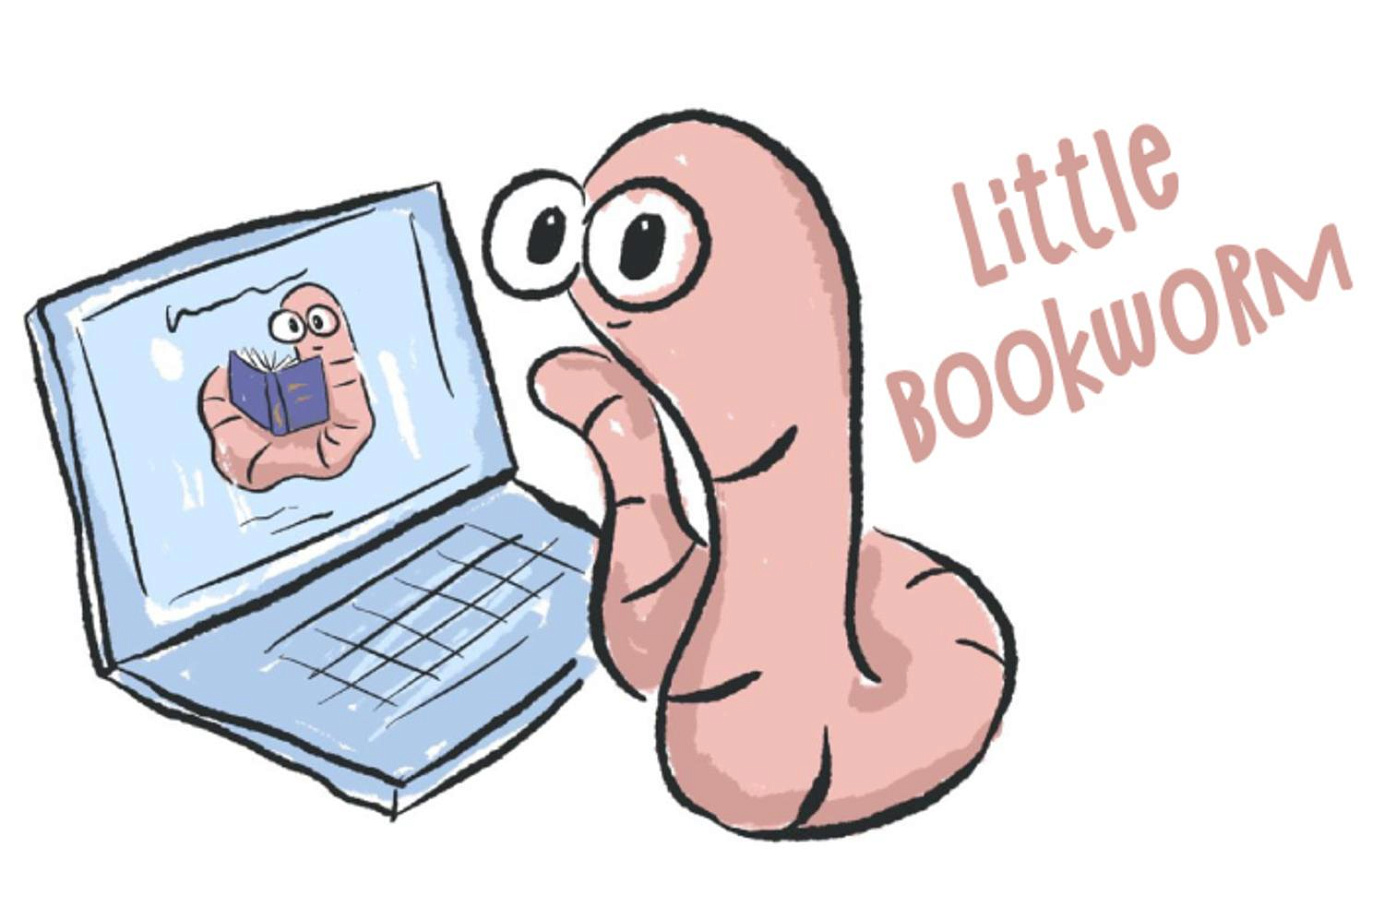 Серия видеовстреч "Little Bookworm"